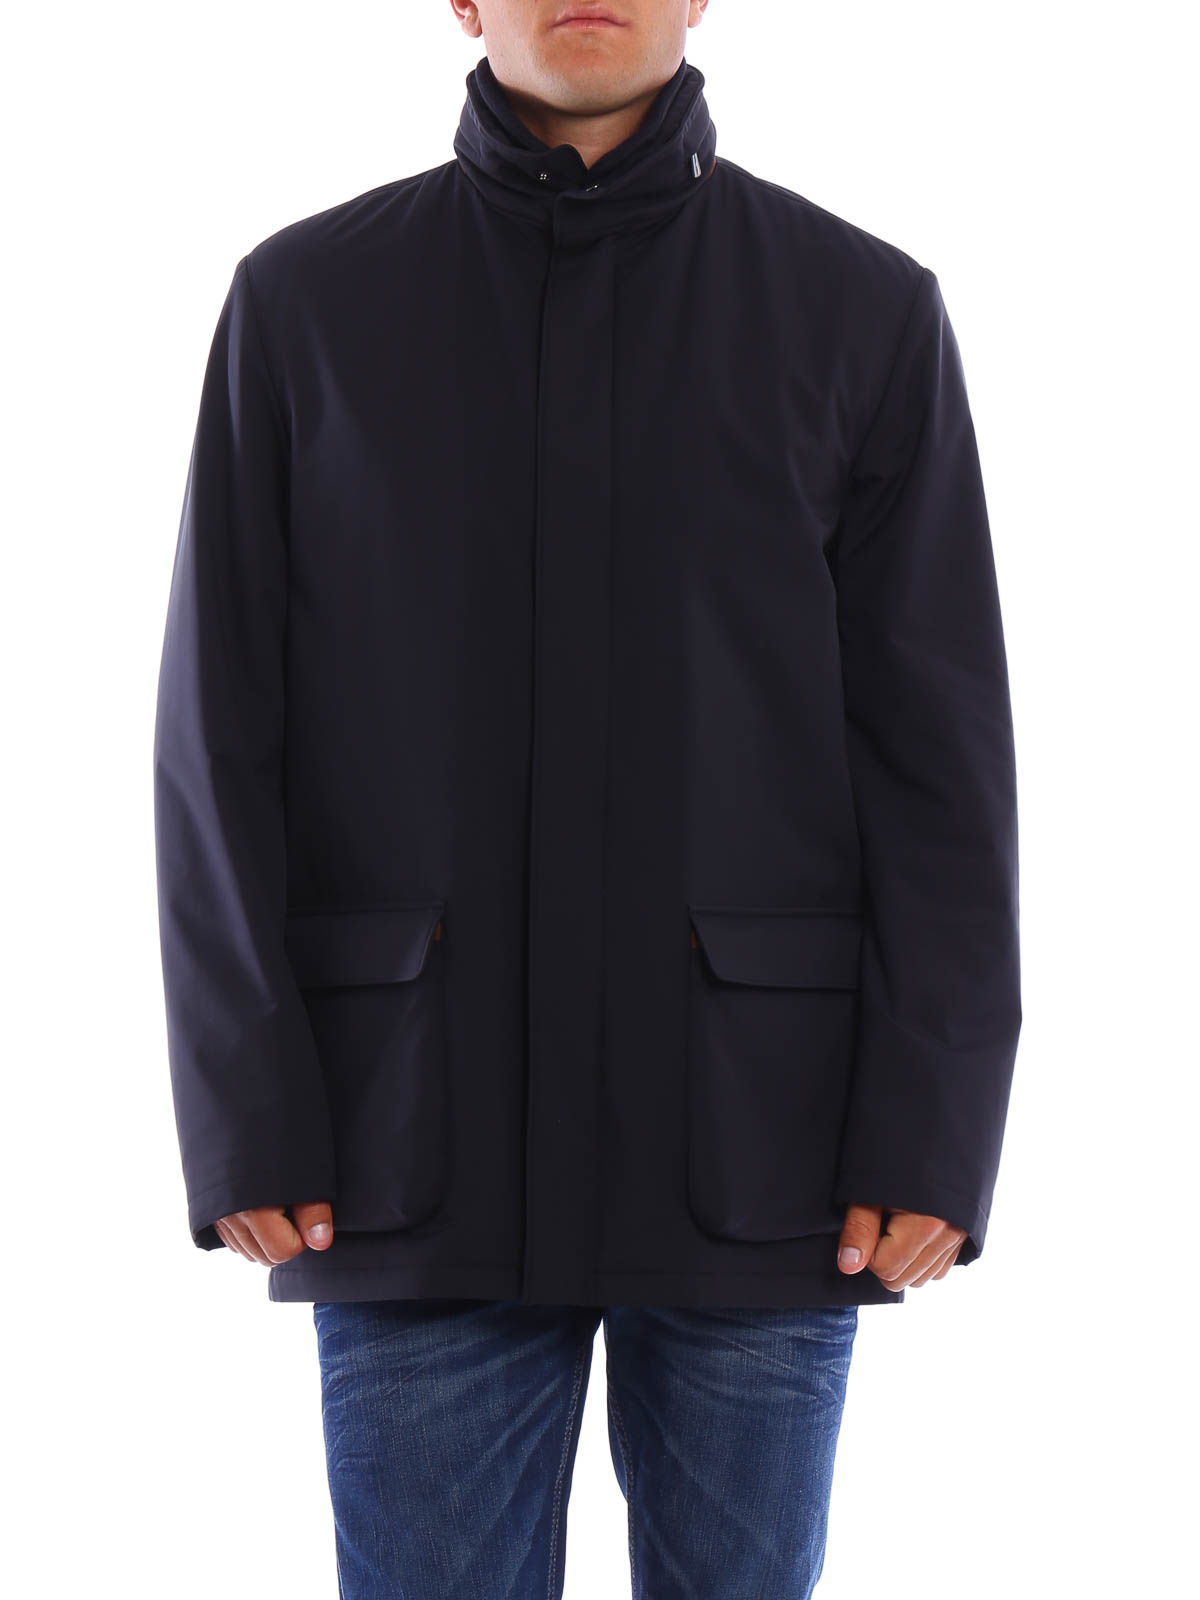 ダウン・ハイテクジャケット Loro Piana - Winter Voyager jacket ...